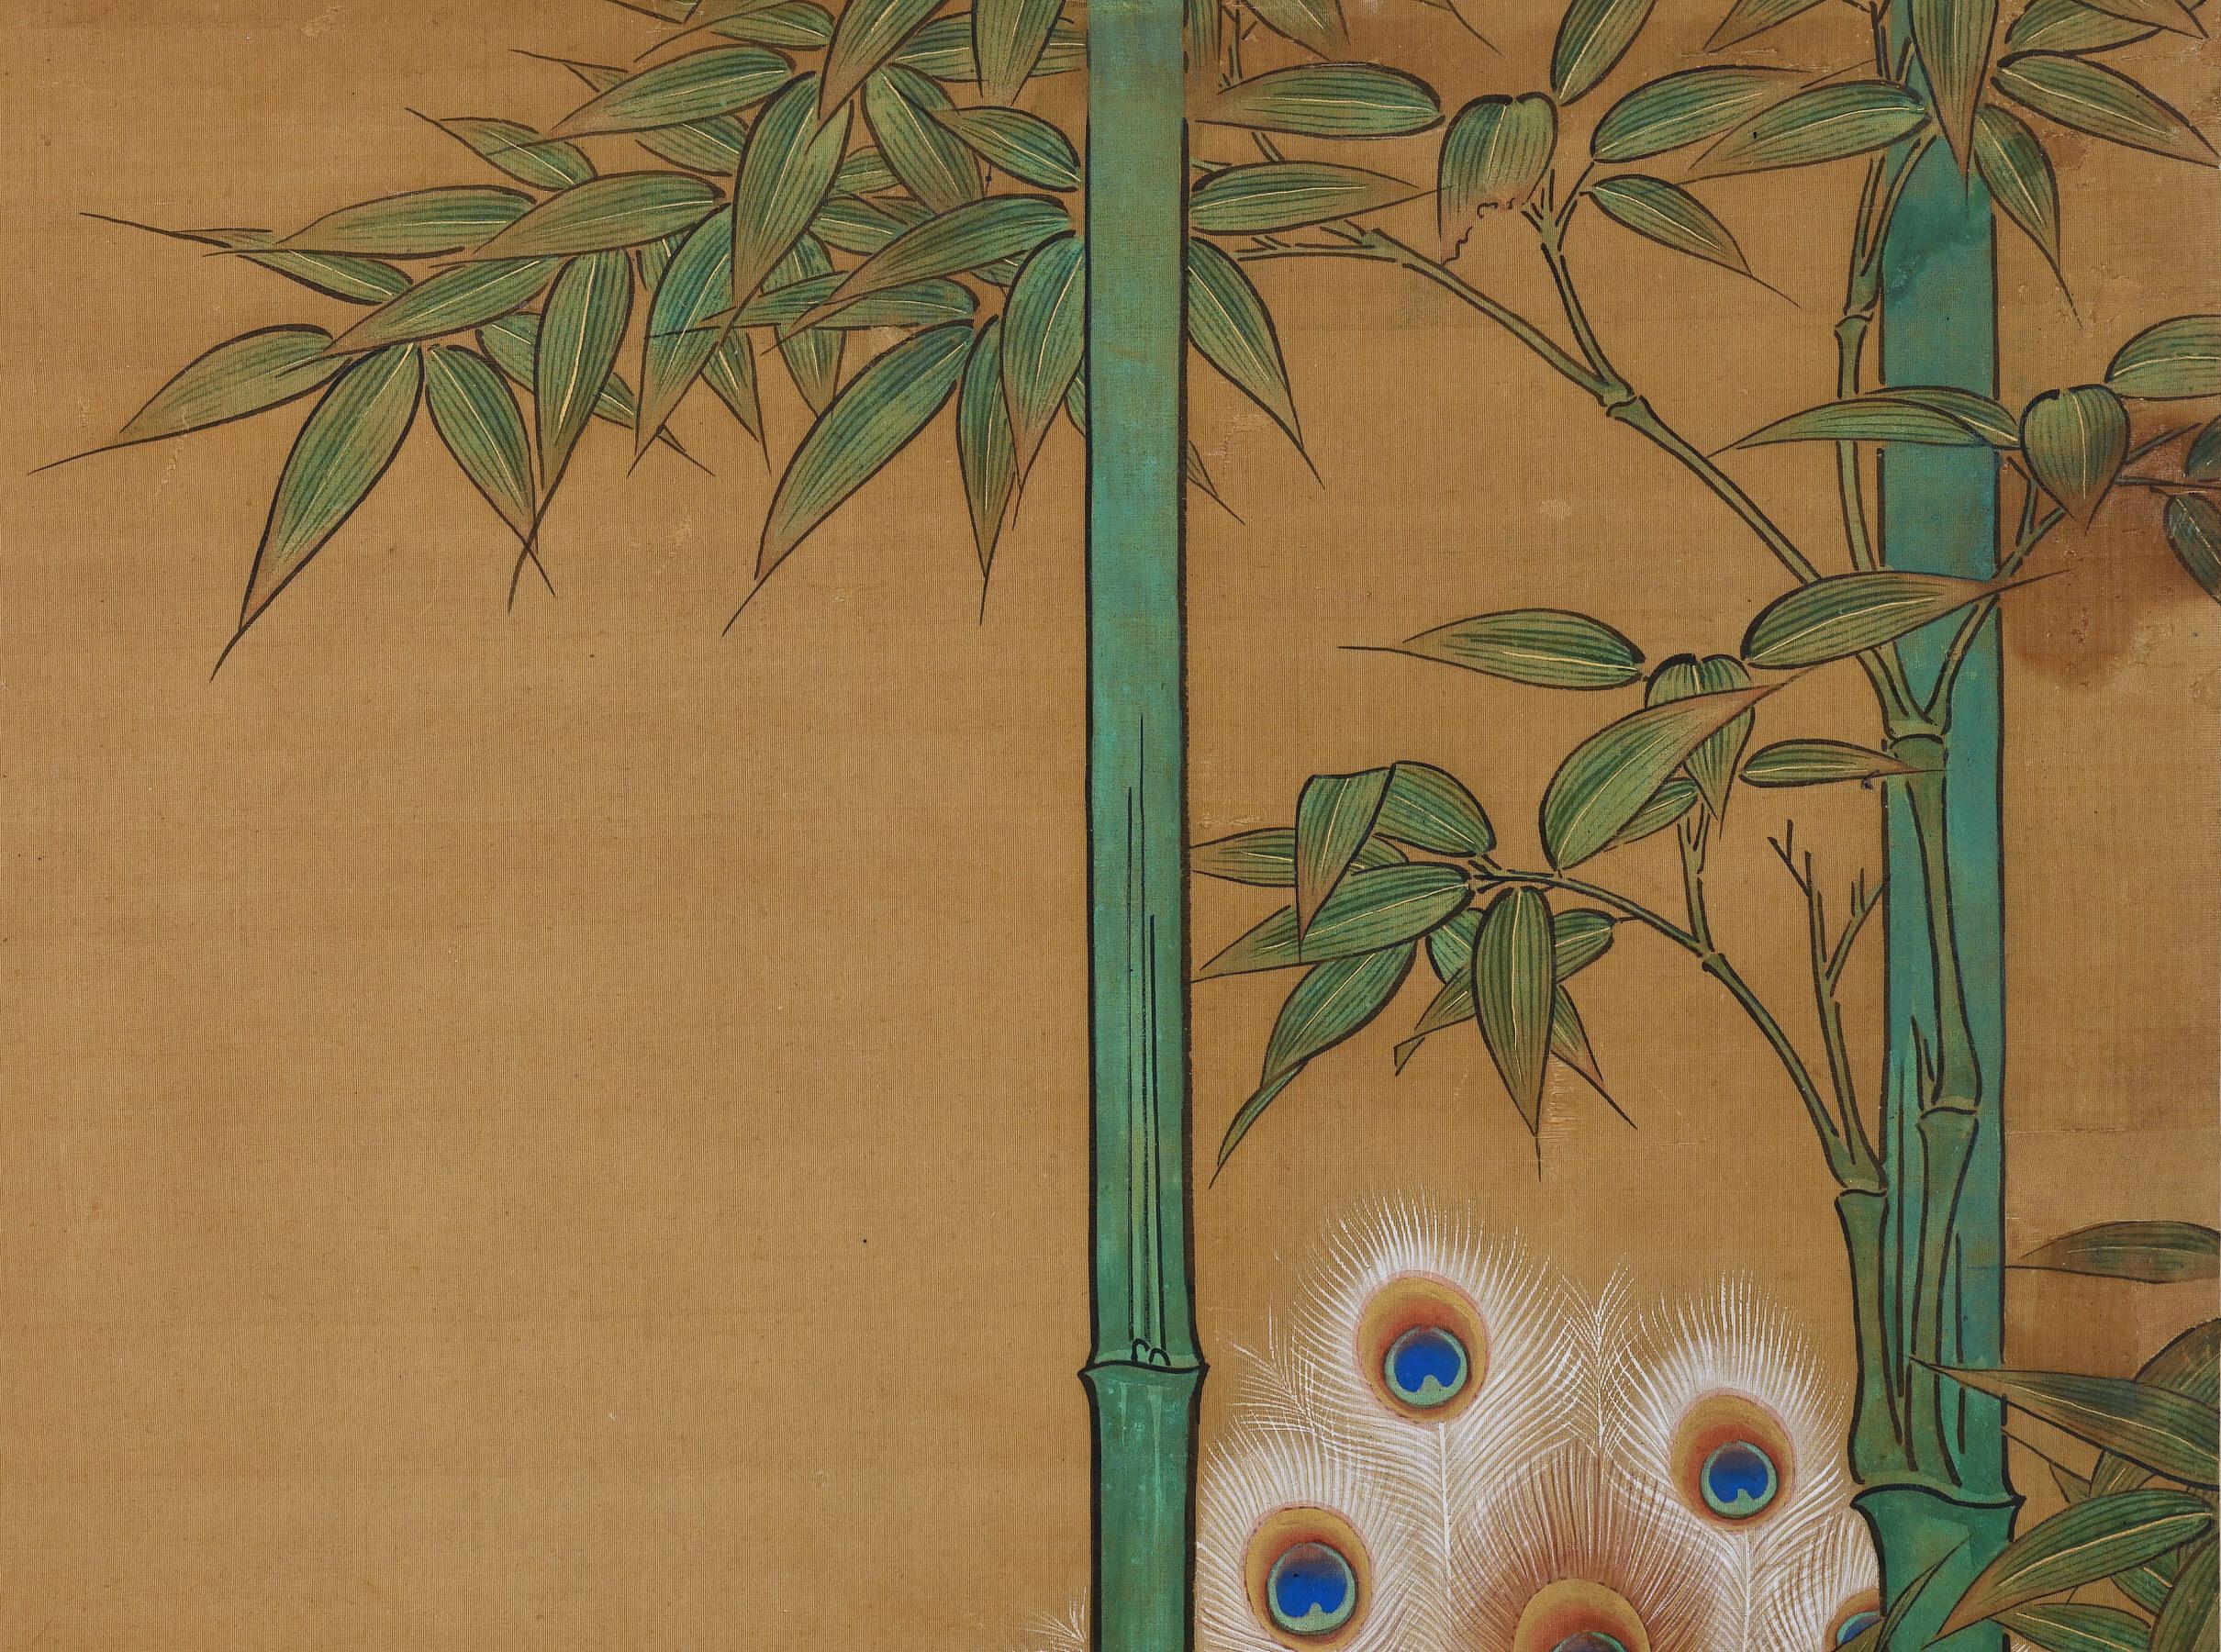 Edo 19th Century Japanese Silk Painting by Kano Chikanobu, Peacock & Bamboo